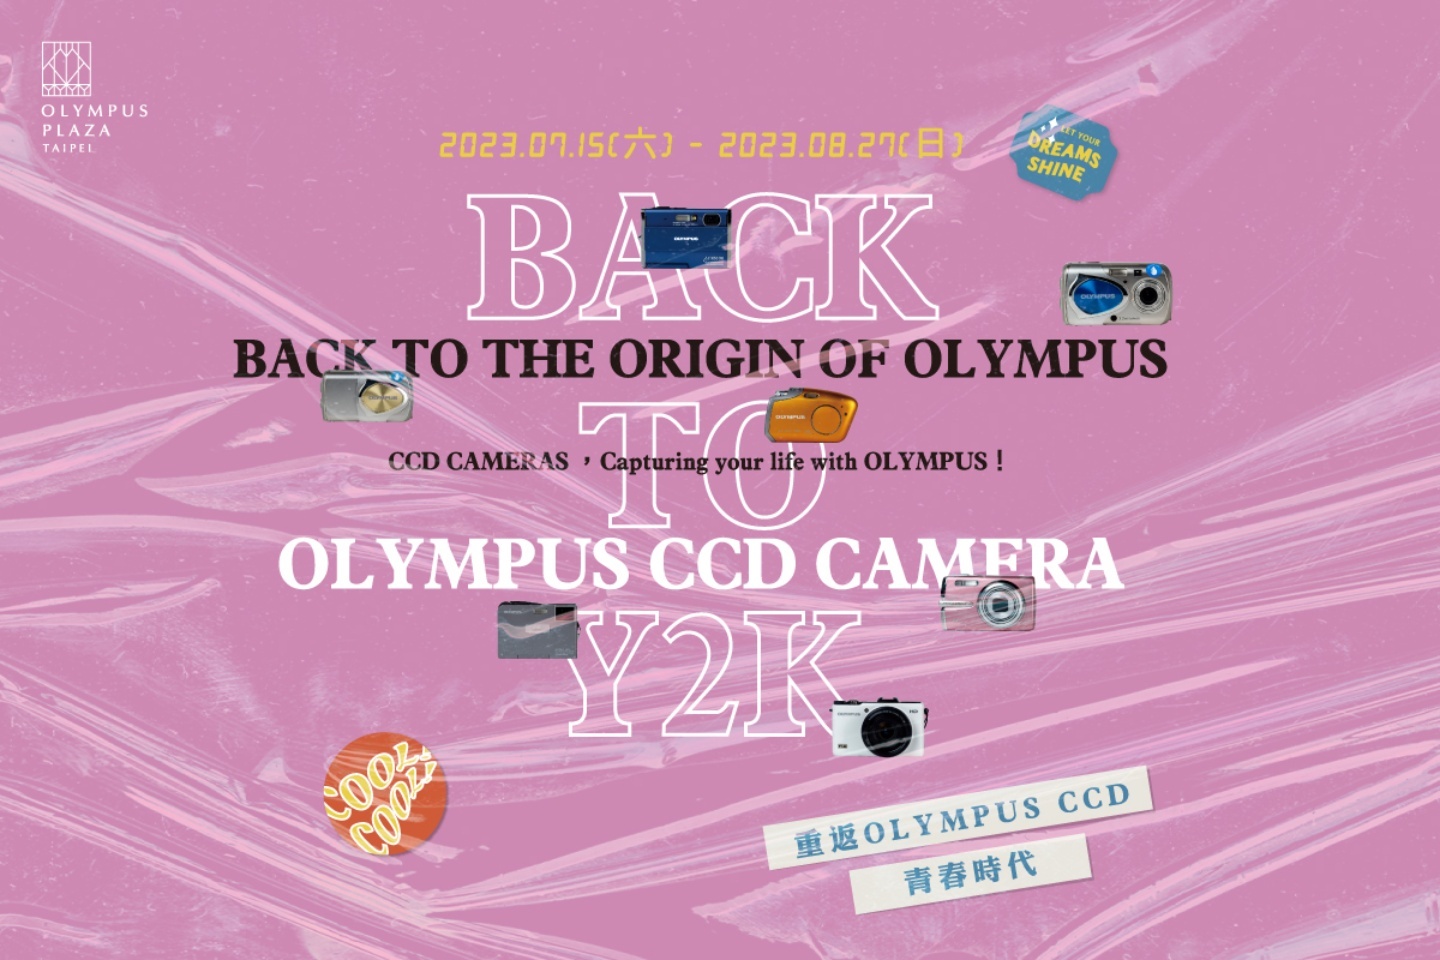 OLYMPUS CCD 相機特展讓你 BACK TO Y2K！7/15 至 8/27 期間限定